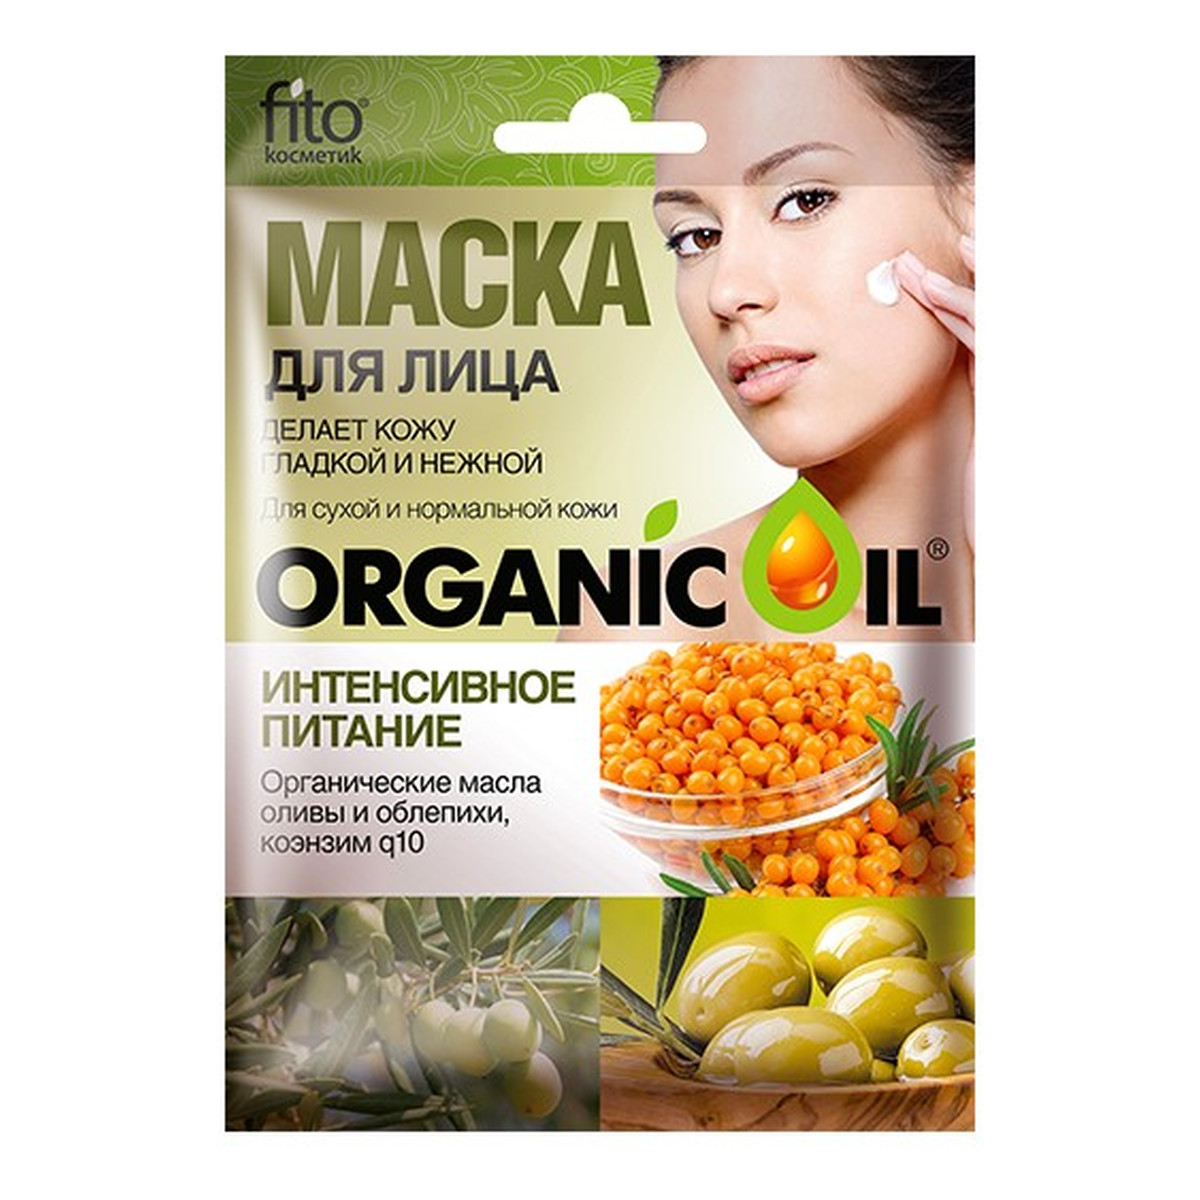 Fitokosmetik Intensywnie odżywiająca maseczka do twarzy - oliwa z oliwek, olej z rokitnika, koenzym Q10 25ml